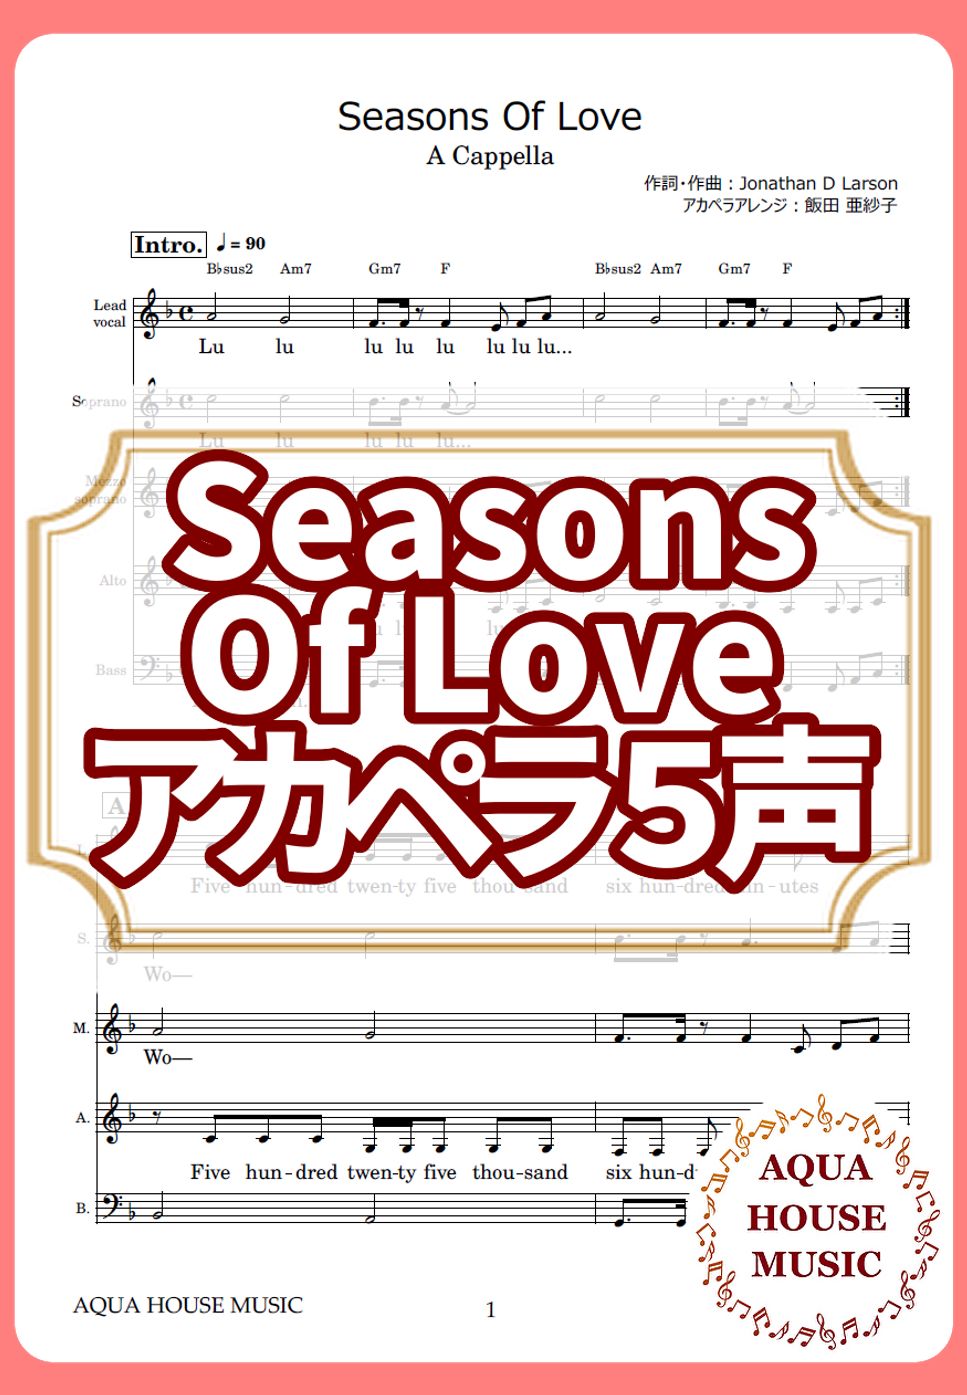 Jonathan D Larson - Seasons Of Love (アカペラ楽譜♪５声ボイパなし) by 飯田 亜紗子